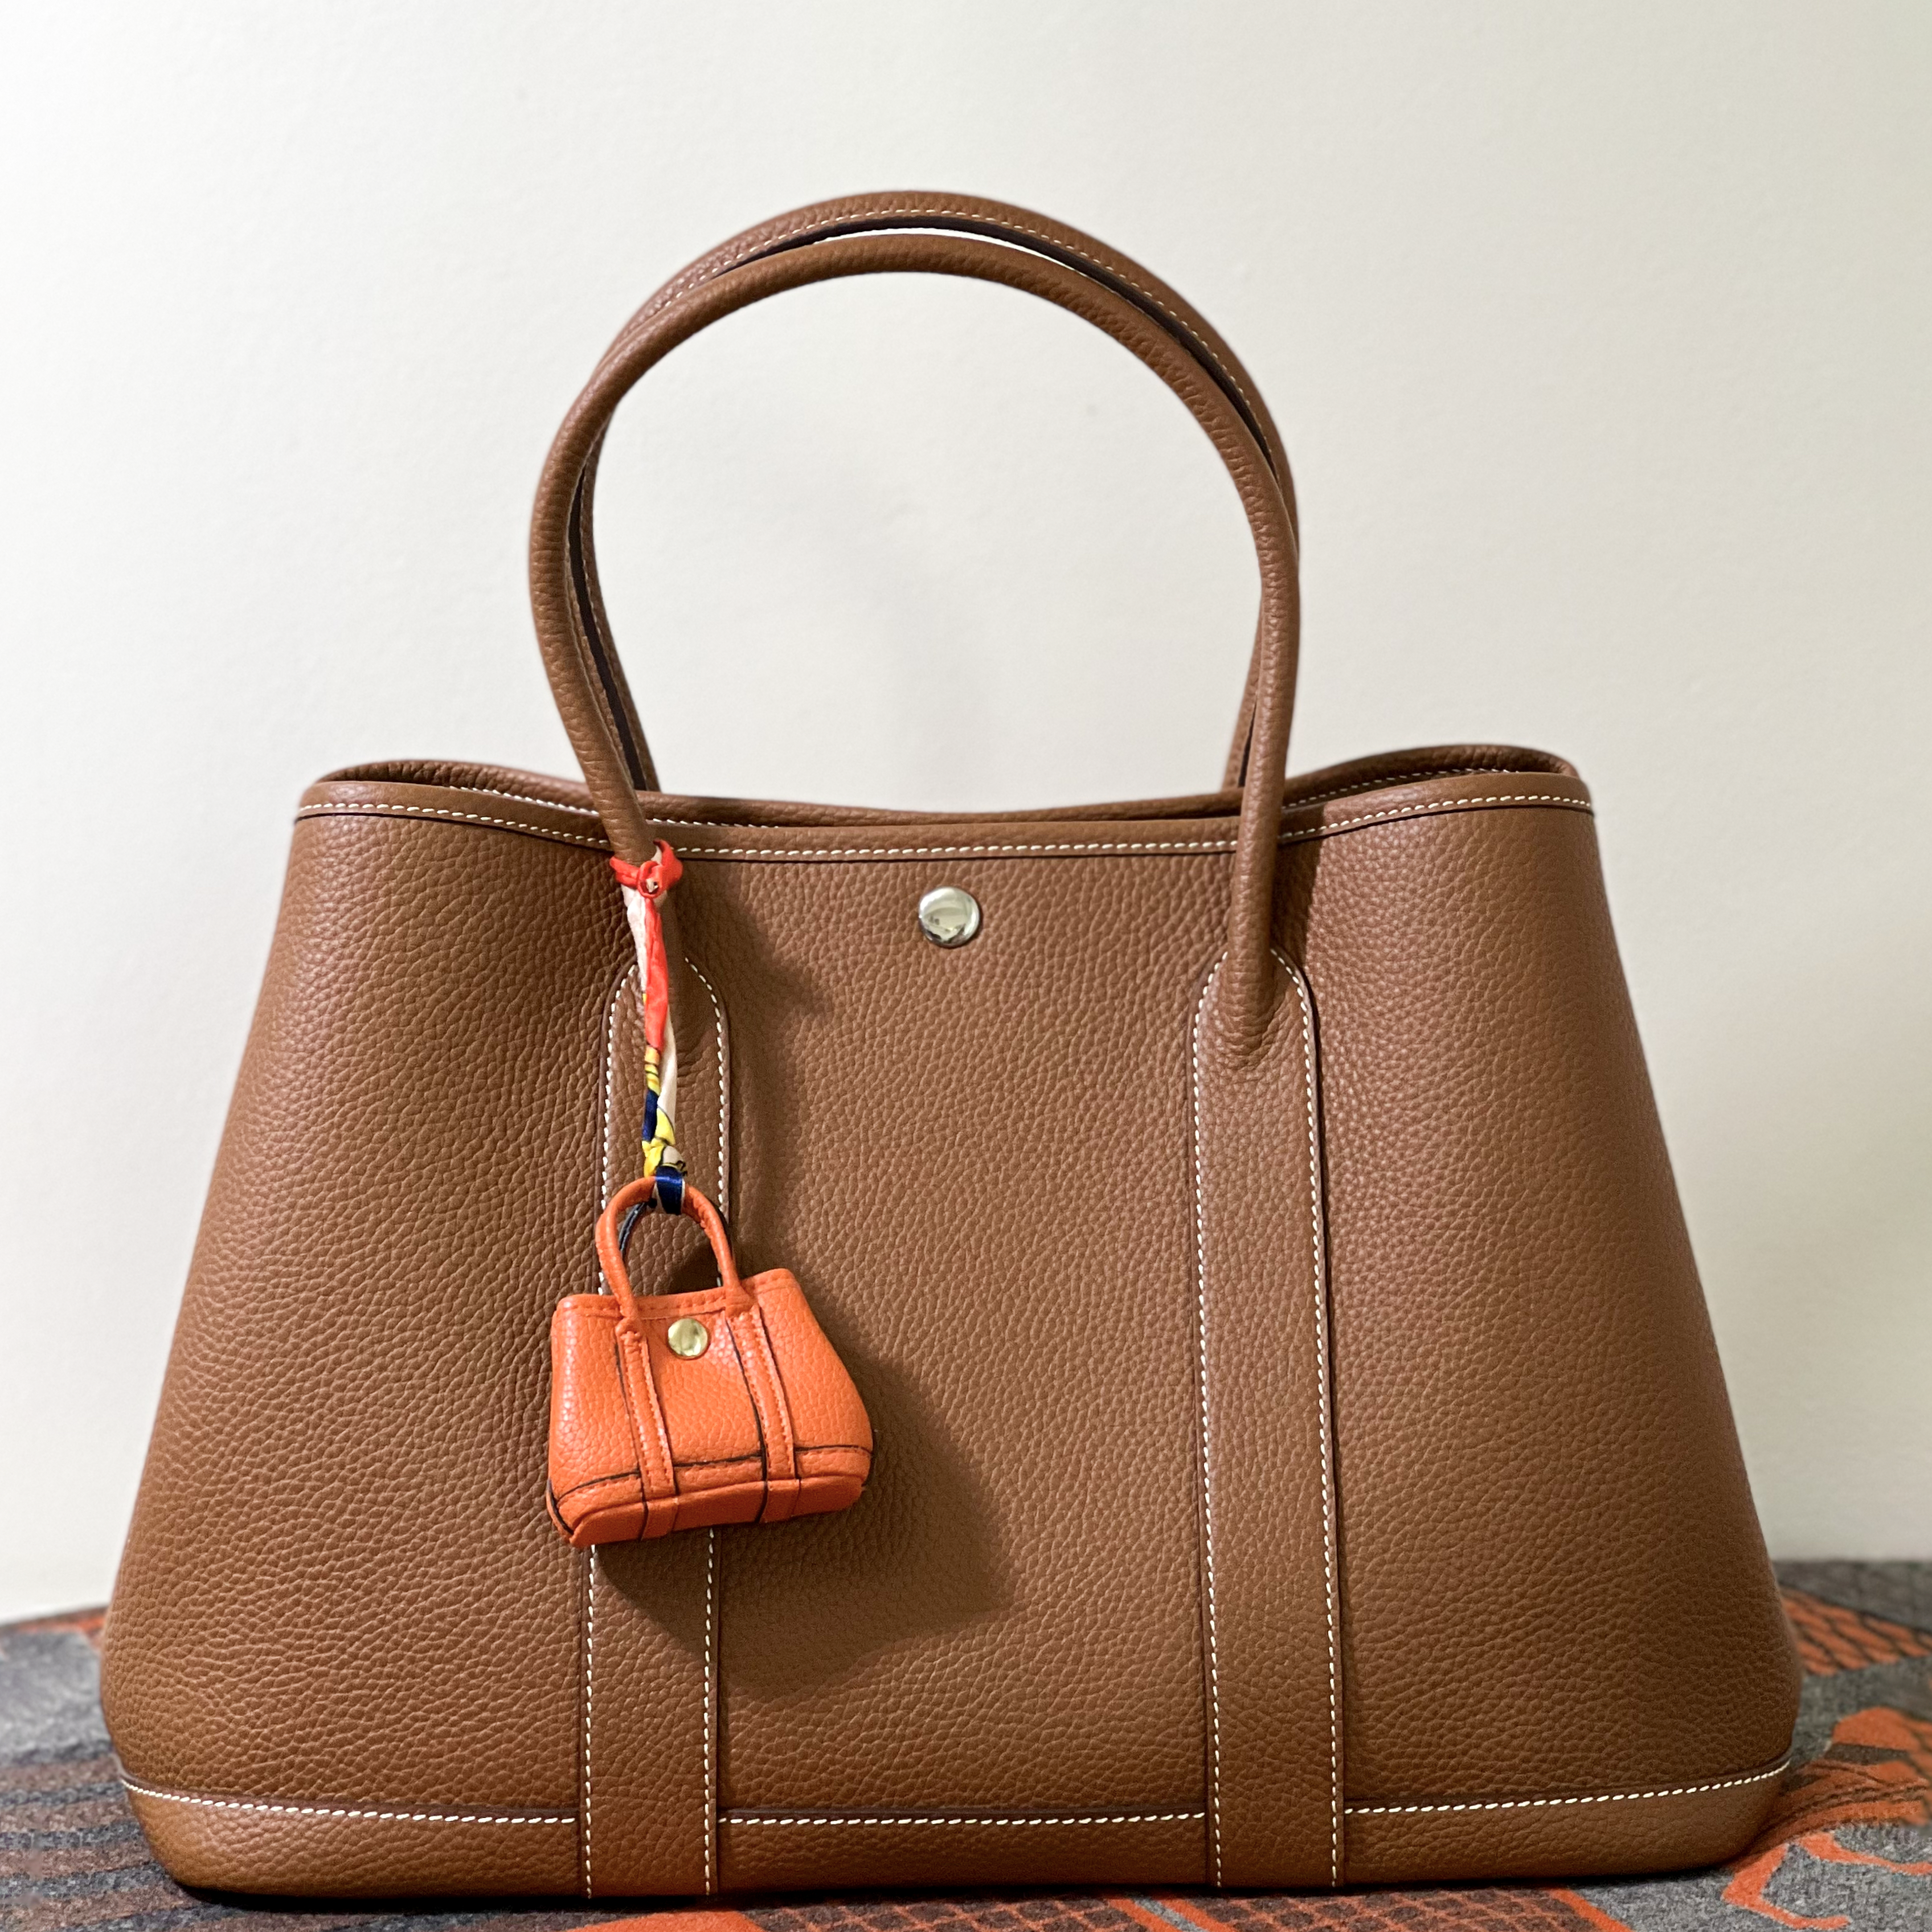 Caroline Premium Leather Bag